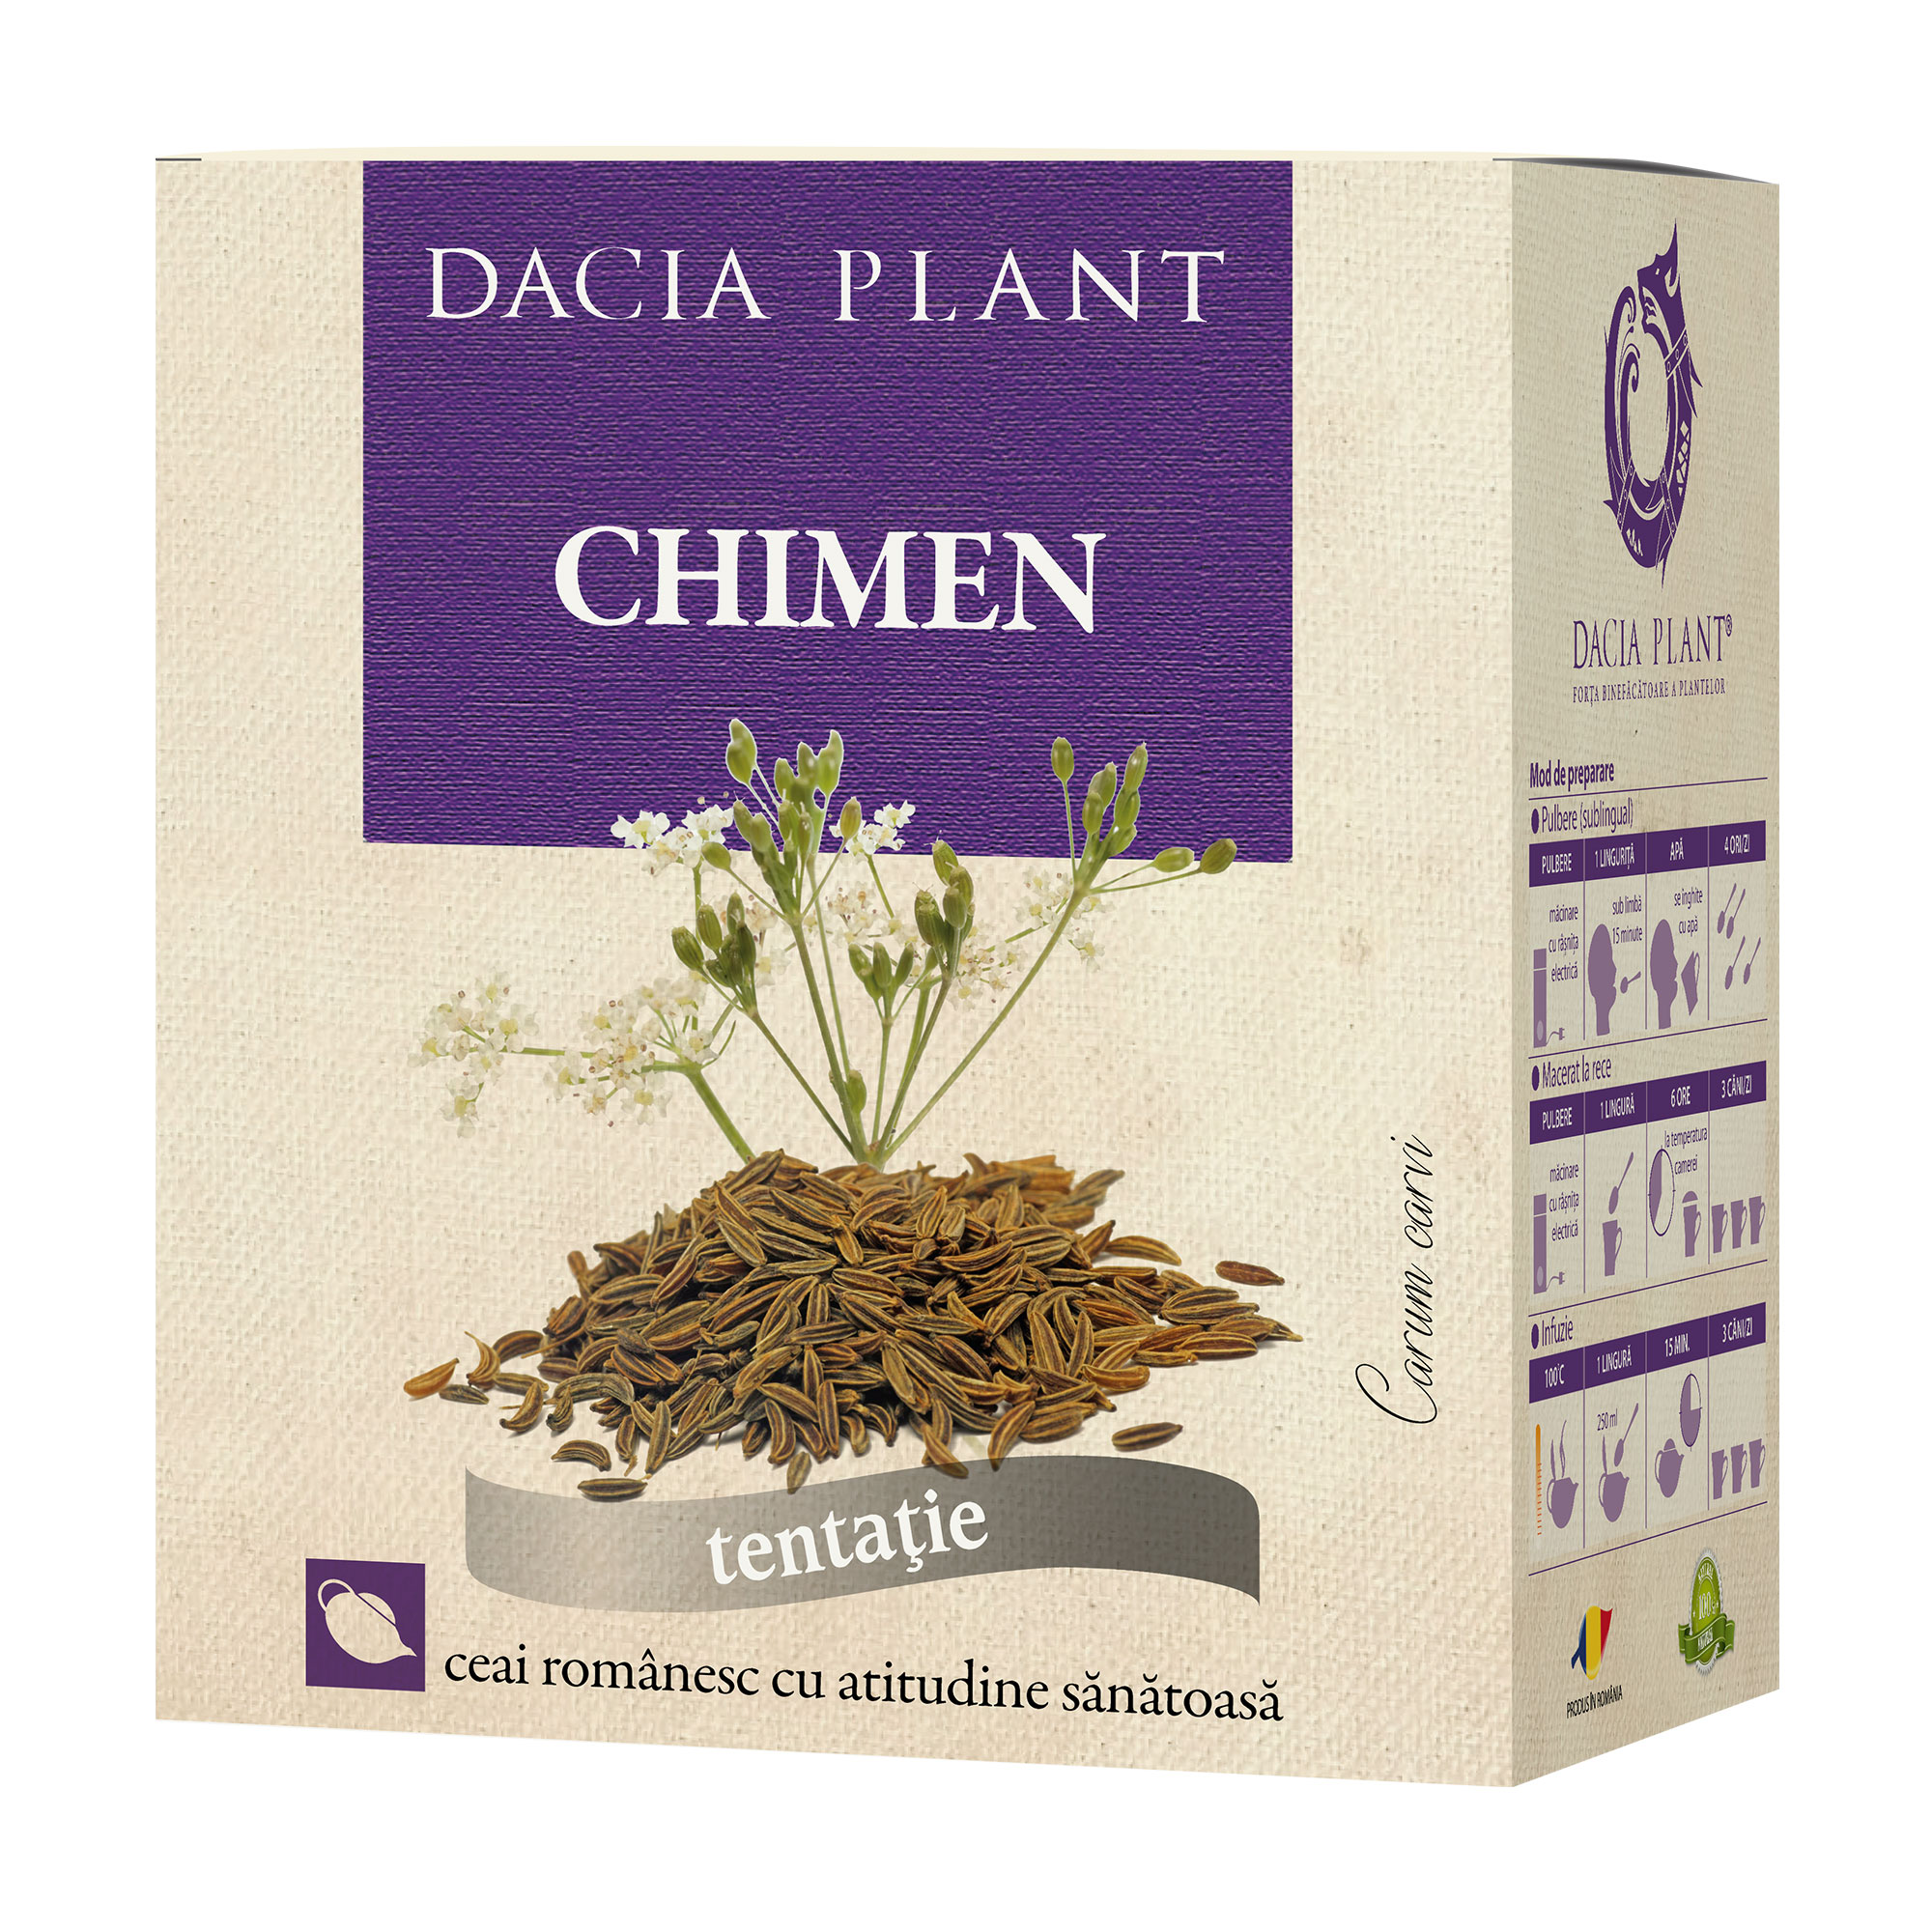 Ceai de slabit din plante medicinale Dacia Plant, 50 g